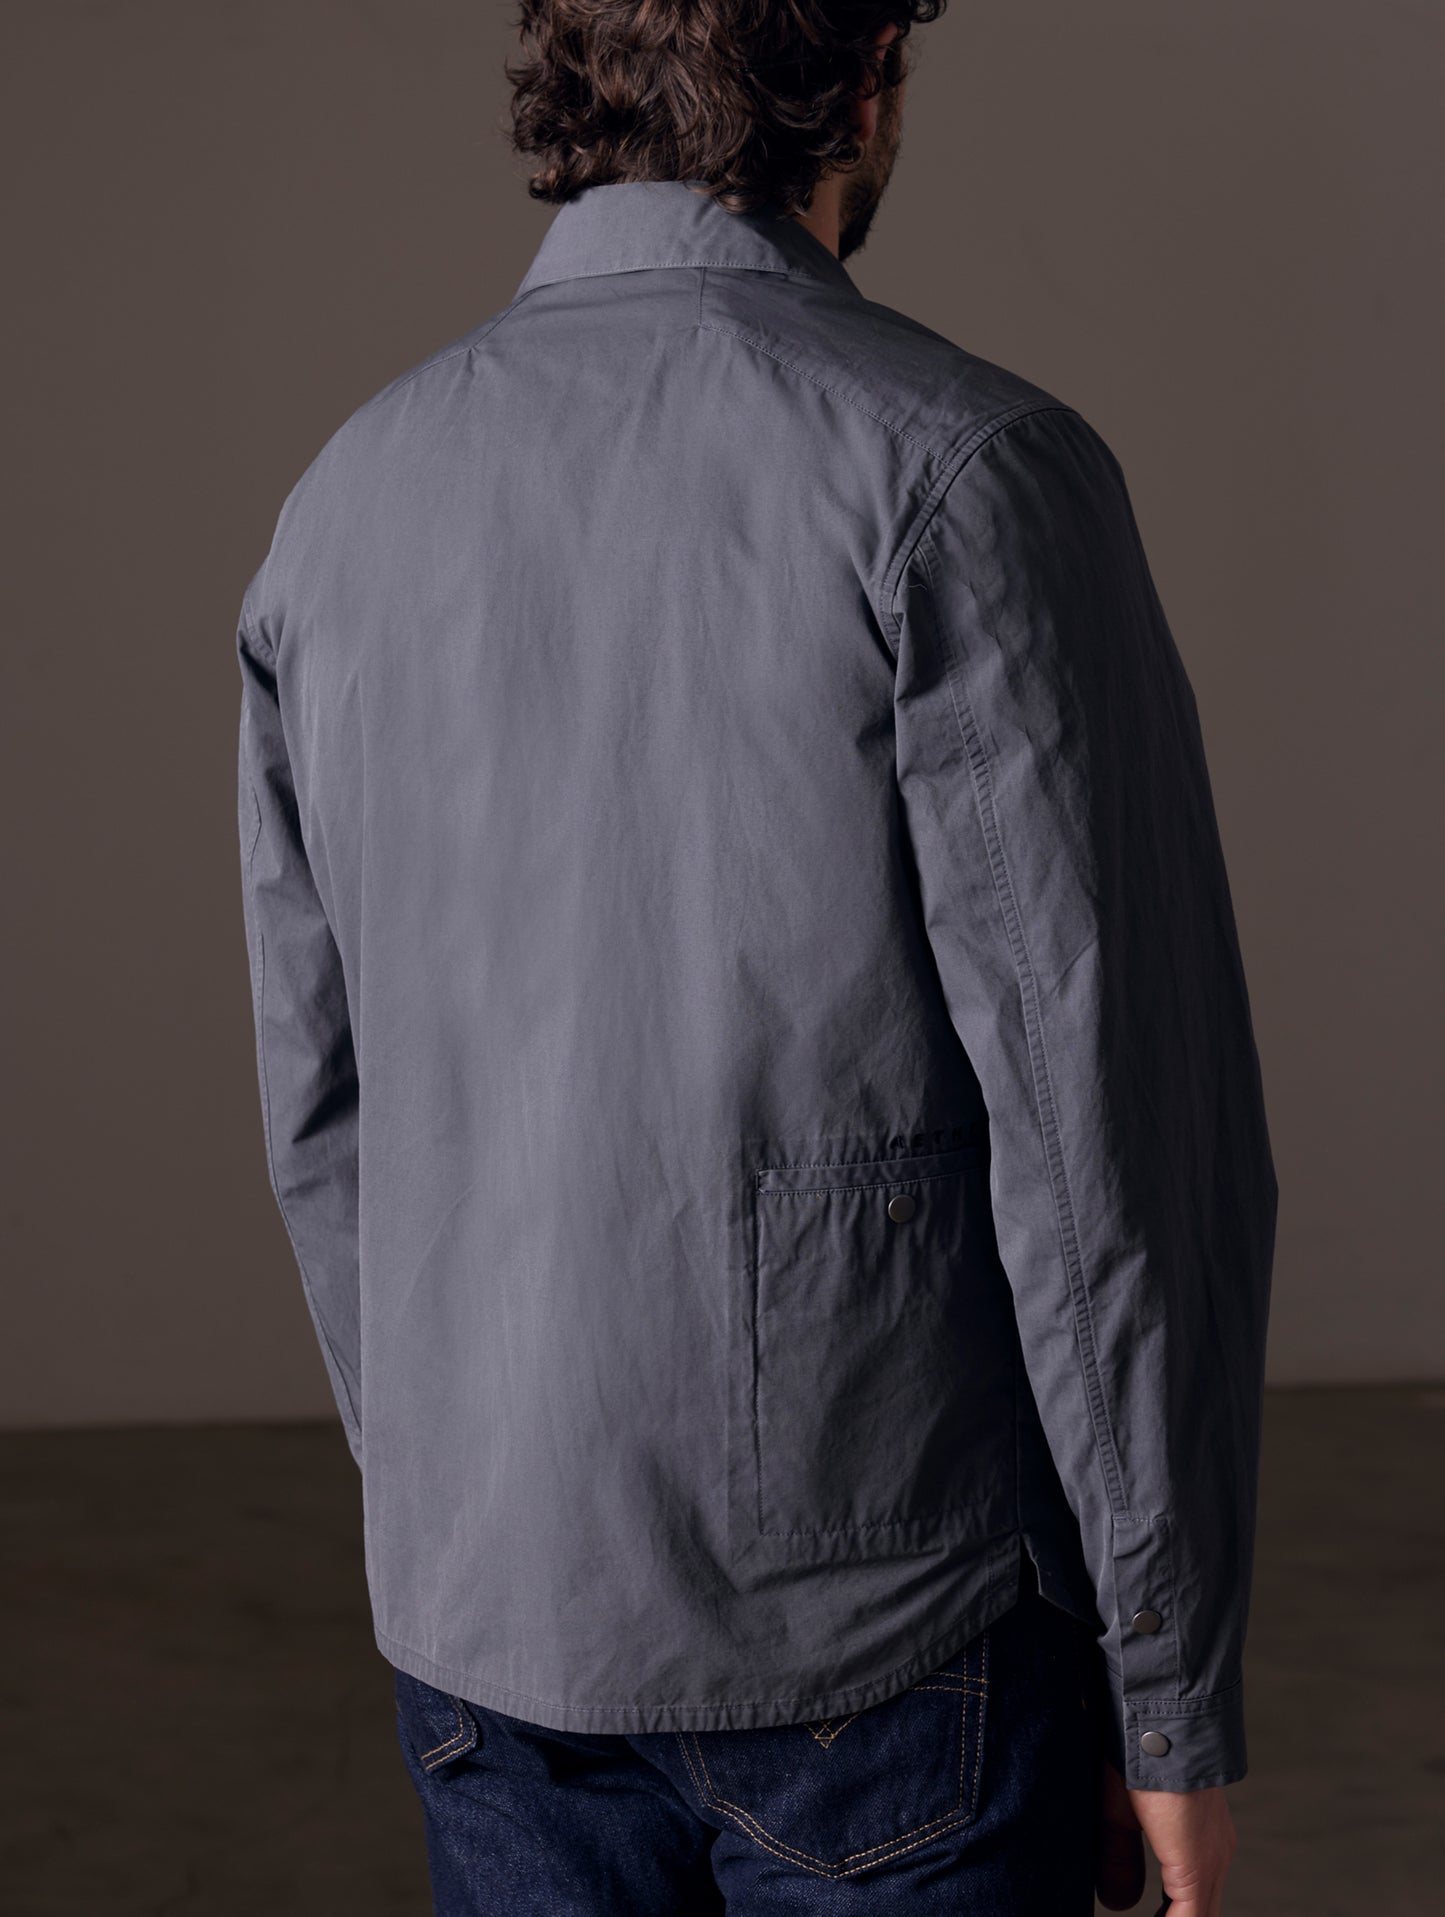 Back view of man wearing grey shirt jacket